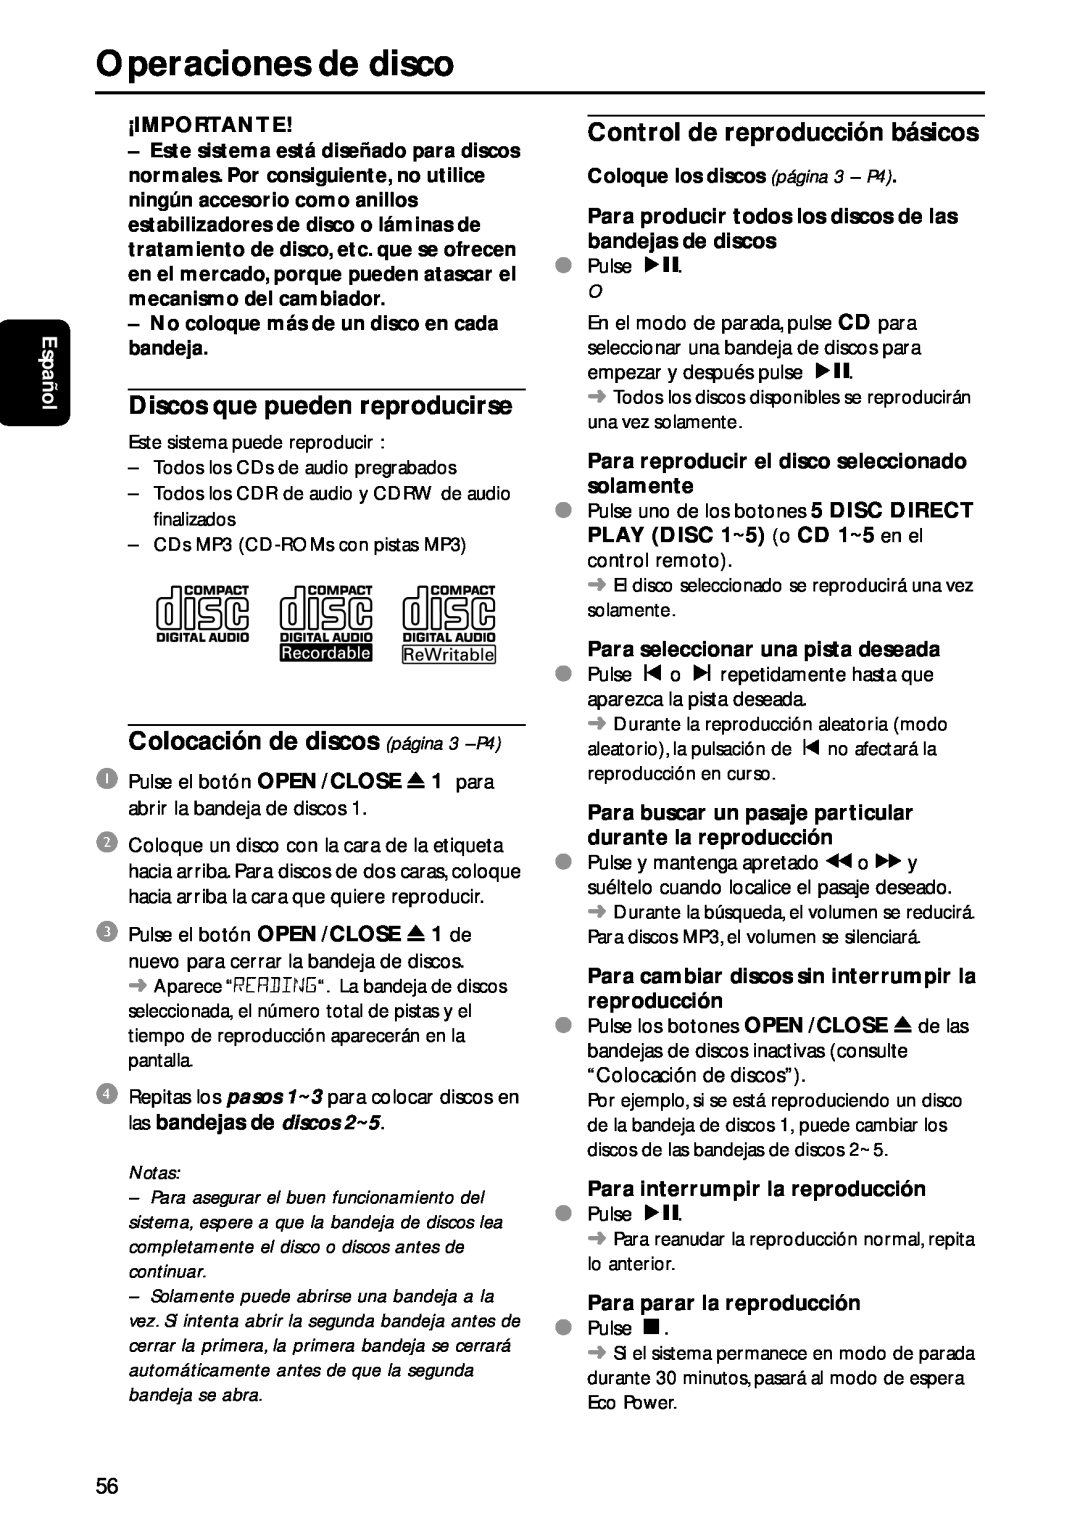 Philips MC-M570 manual Operaciones de disco, Español, ¡Importante, No coloque más de un disco en cada bandeja, Notas 